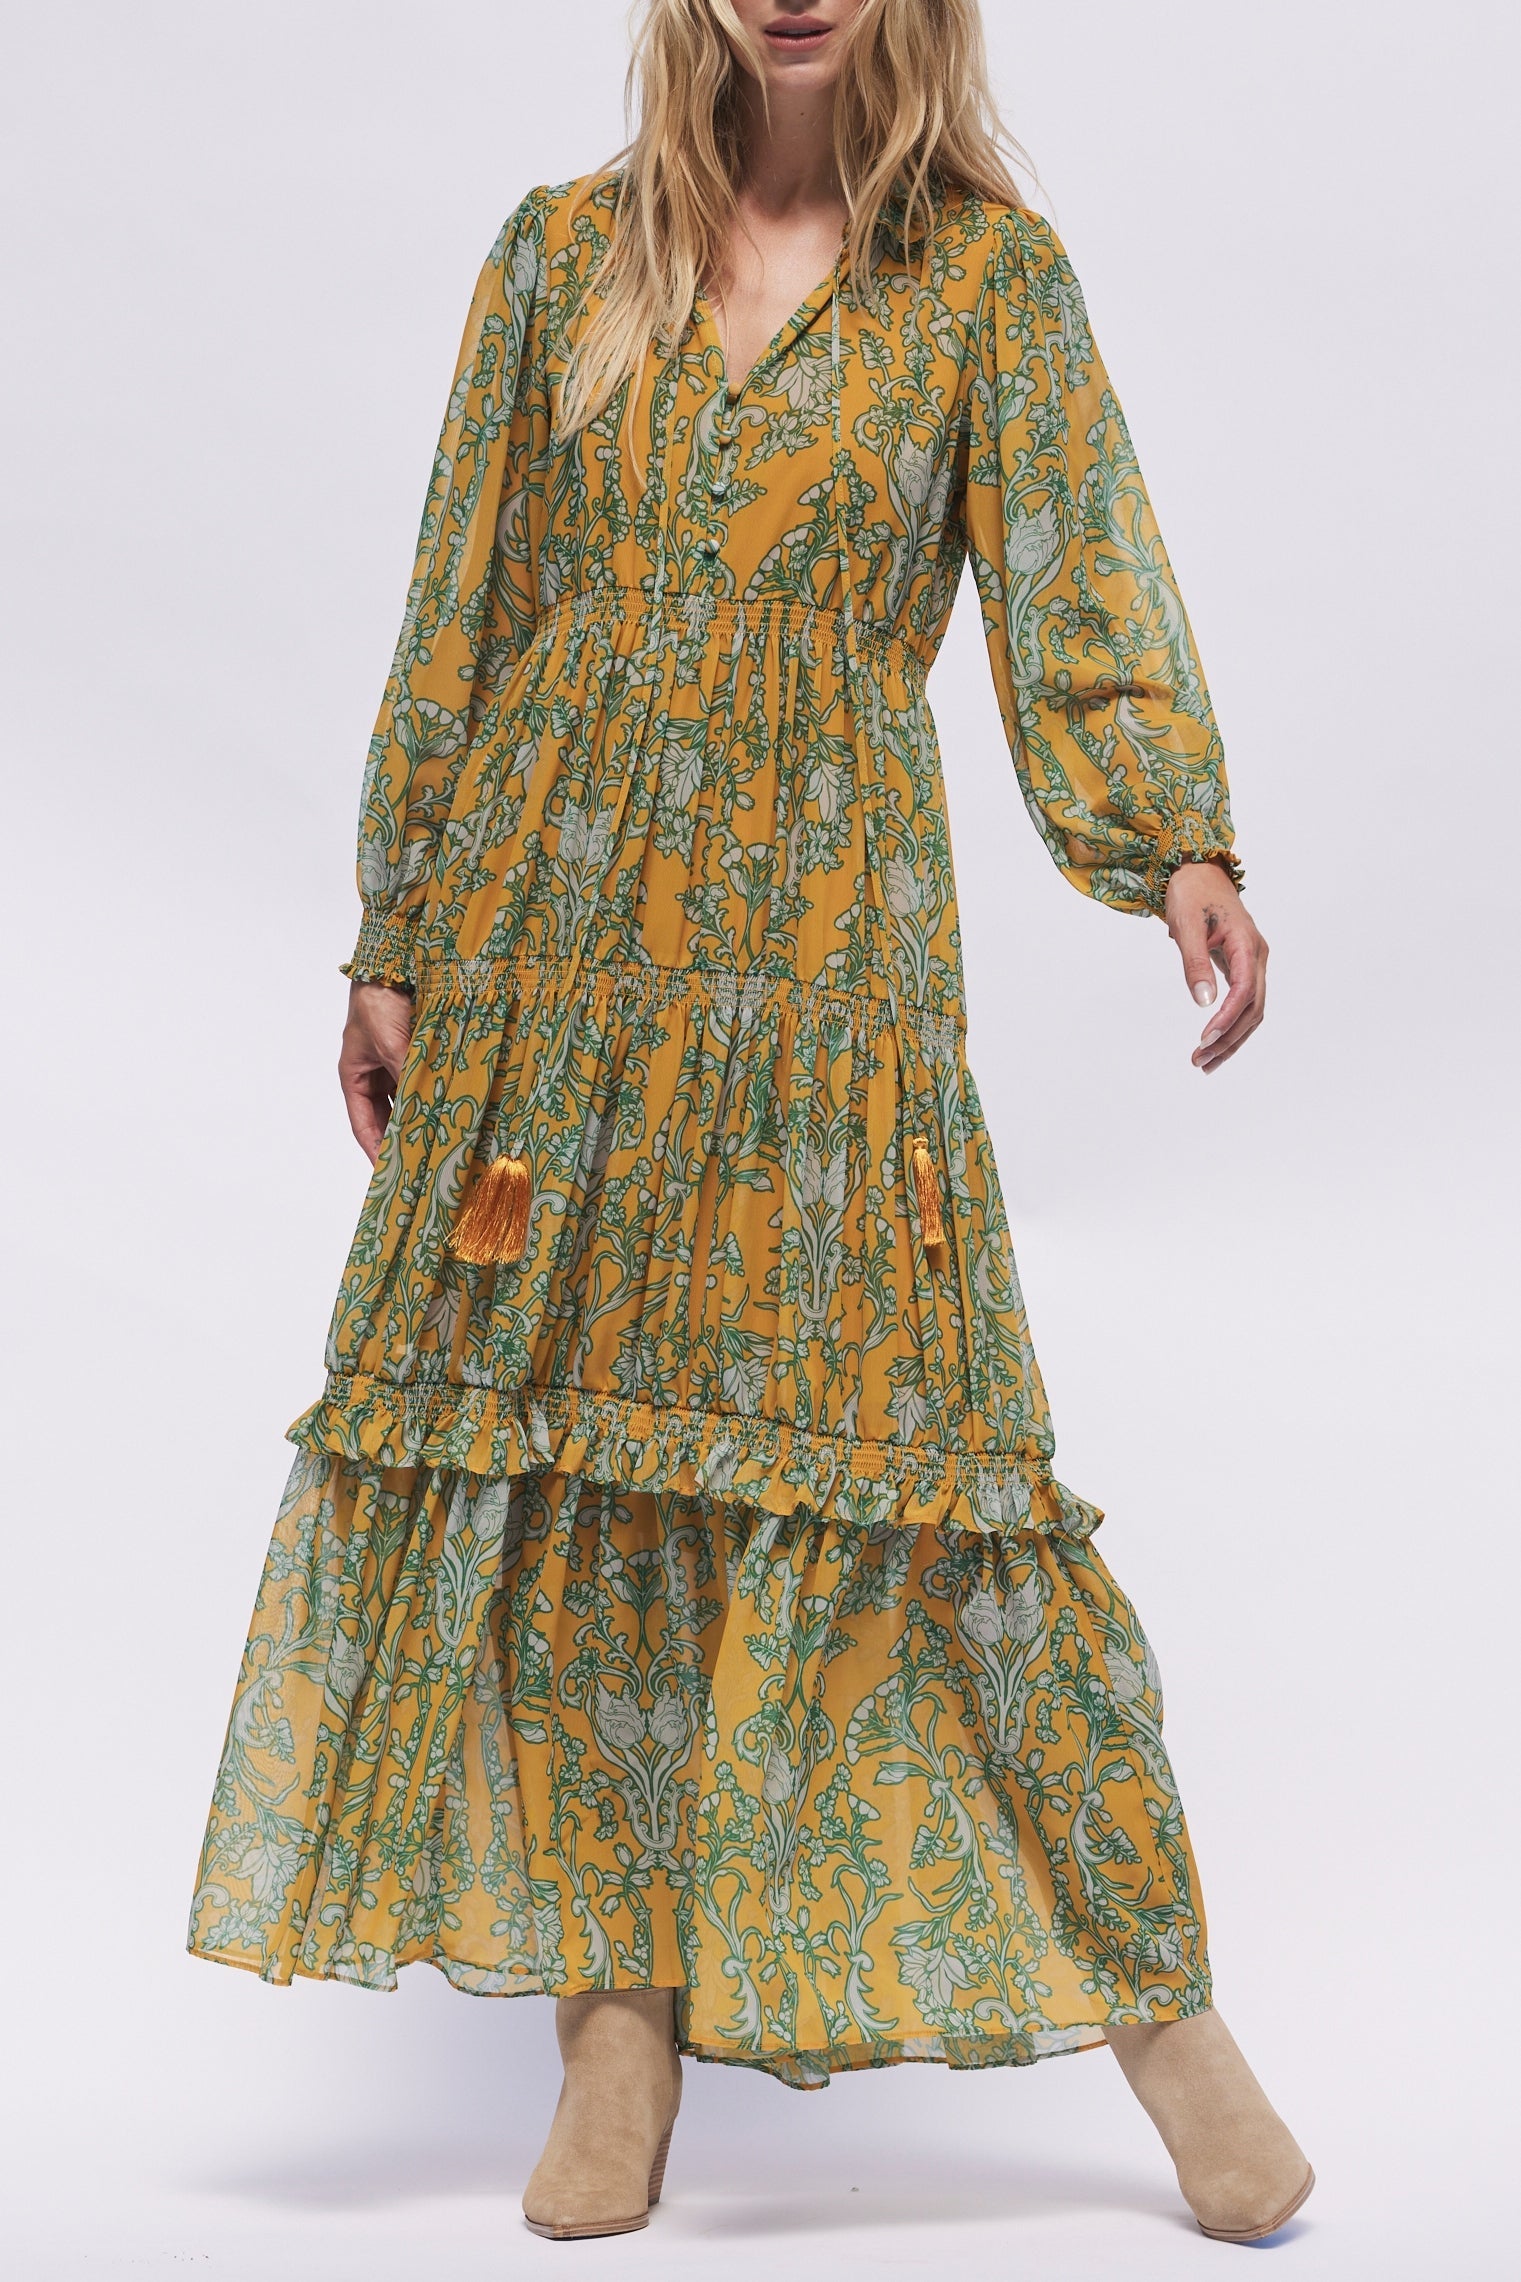 Elizabeth Maxi Dress by Hermoza